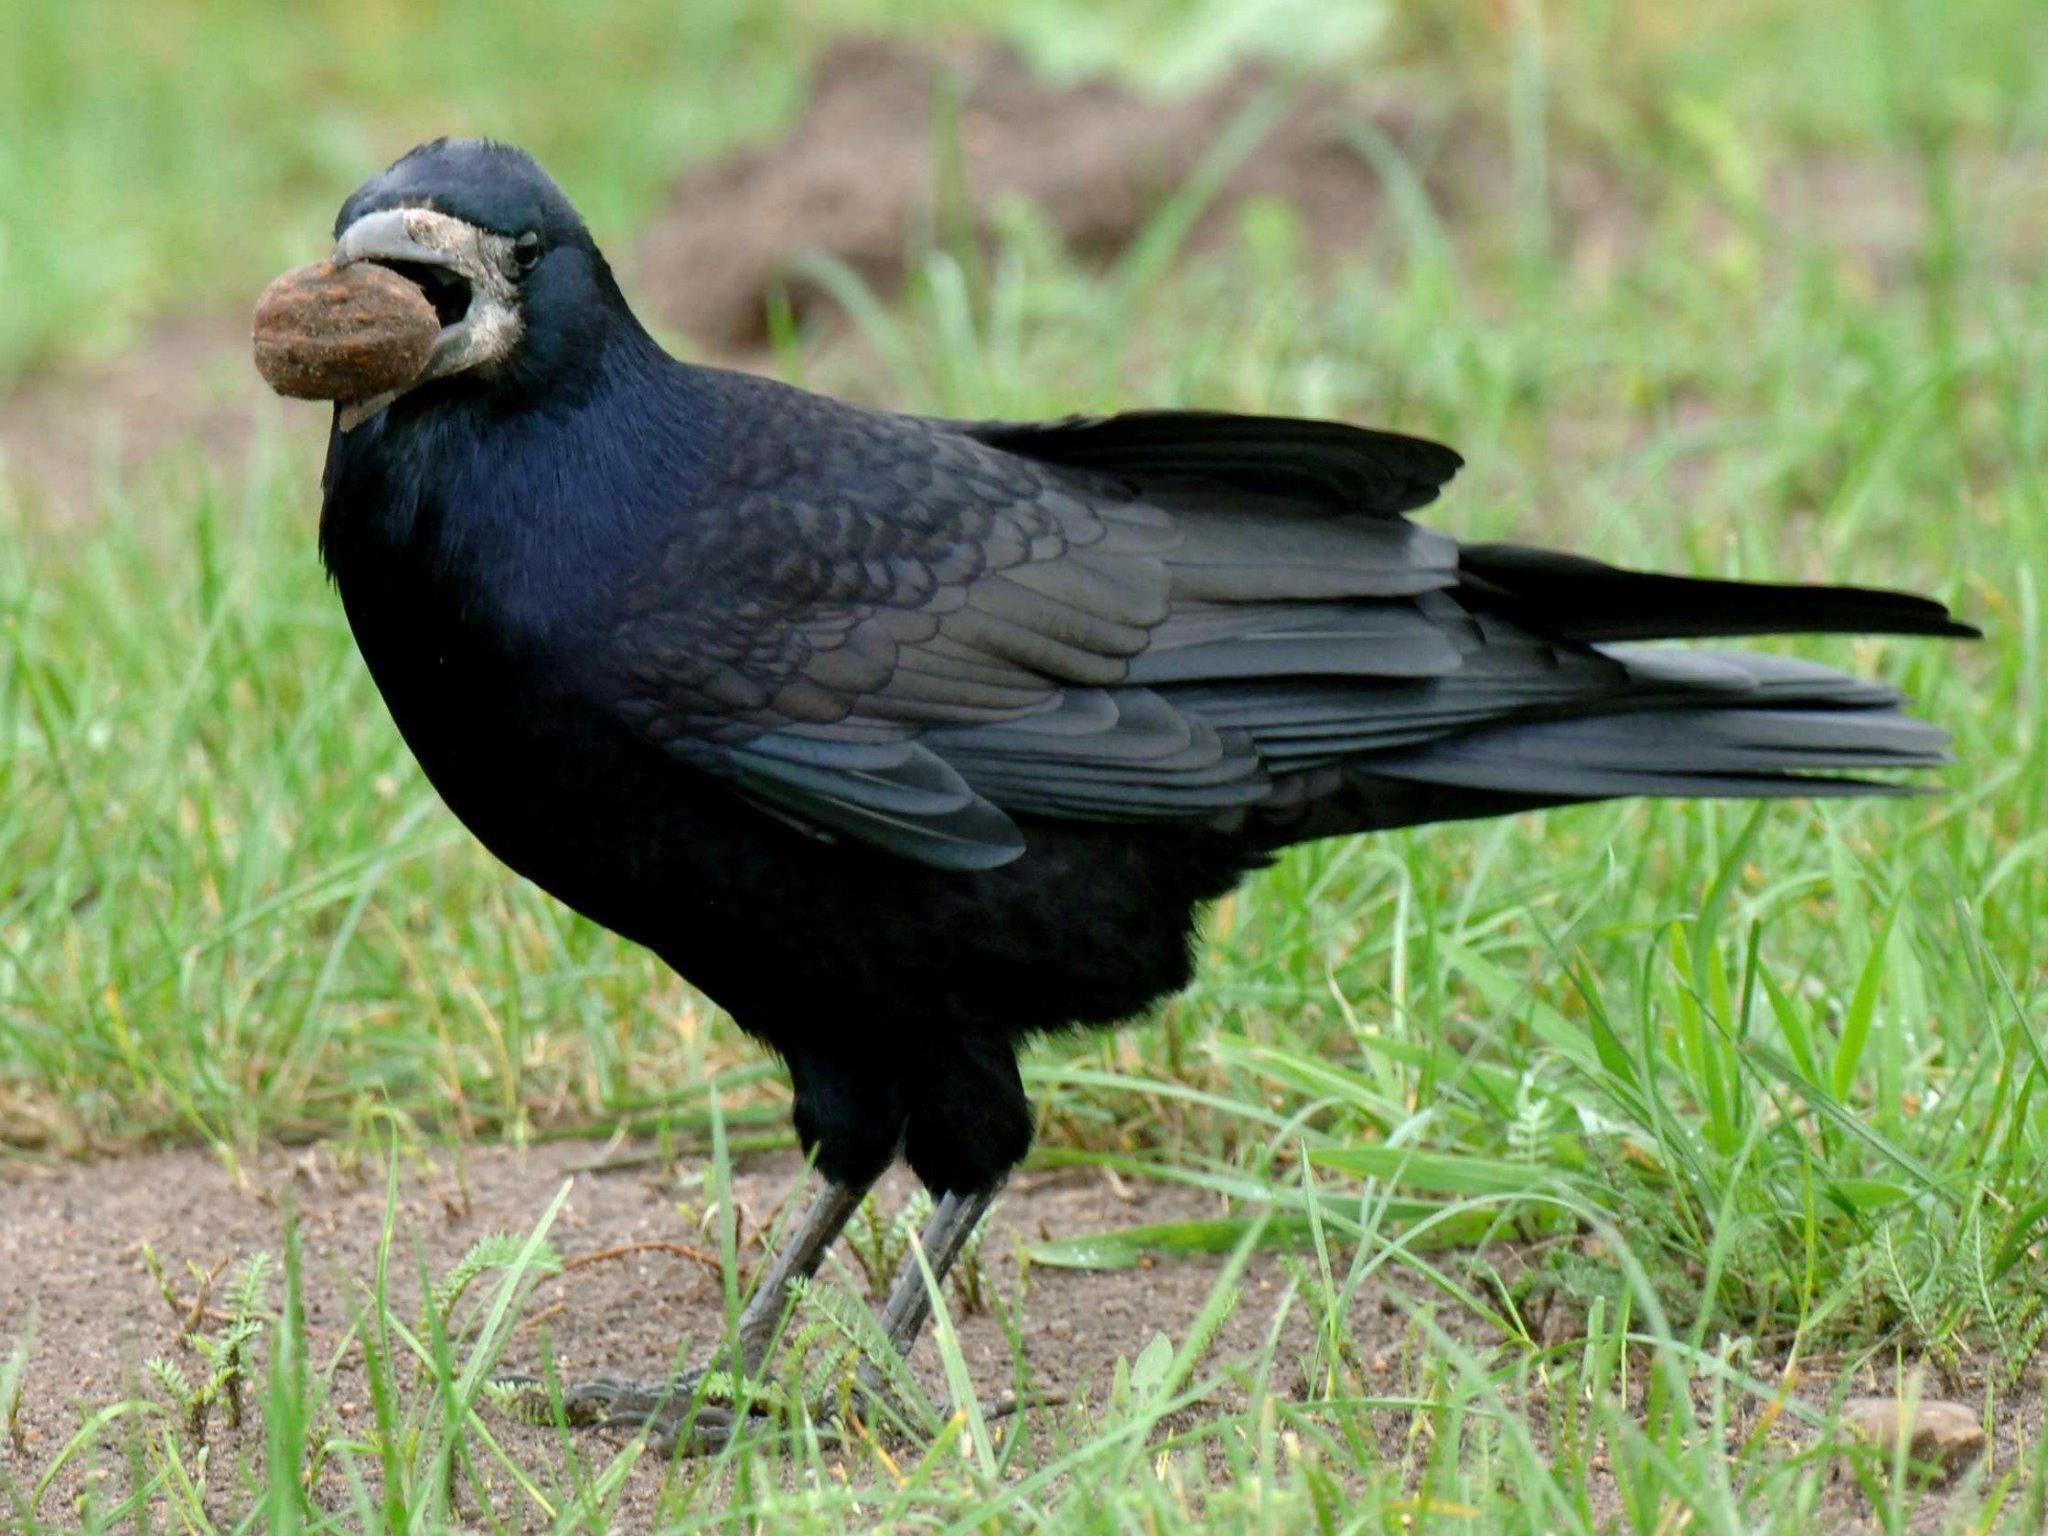 Von den Behörden gibt es jedes Jahr Ausnahmegenehmigung für die Bejagung der stattlichen schwarzen Vögel.